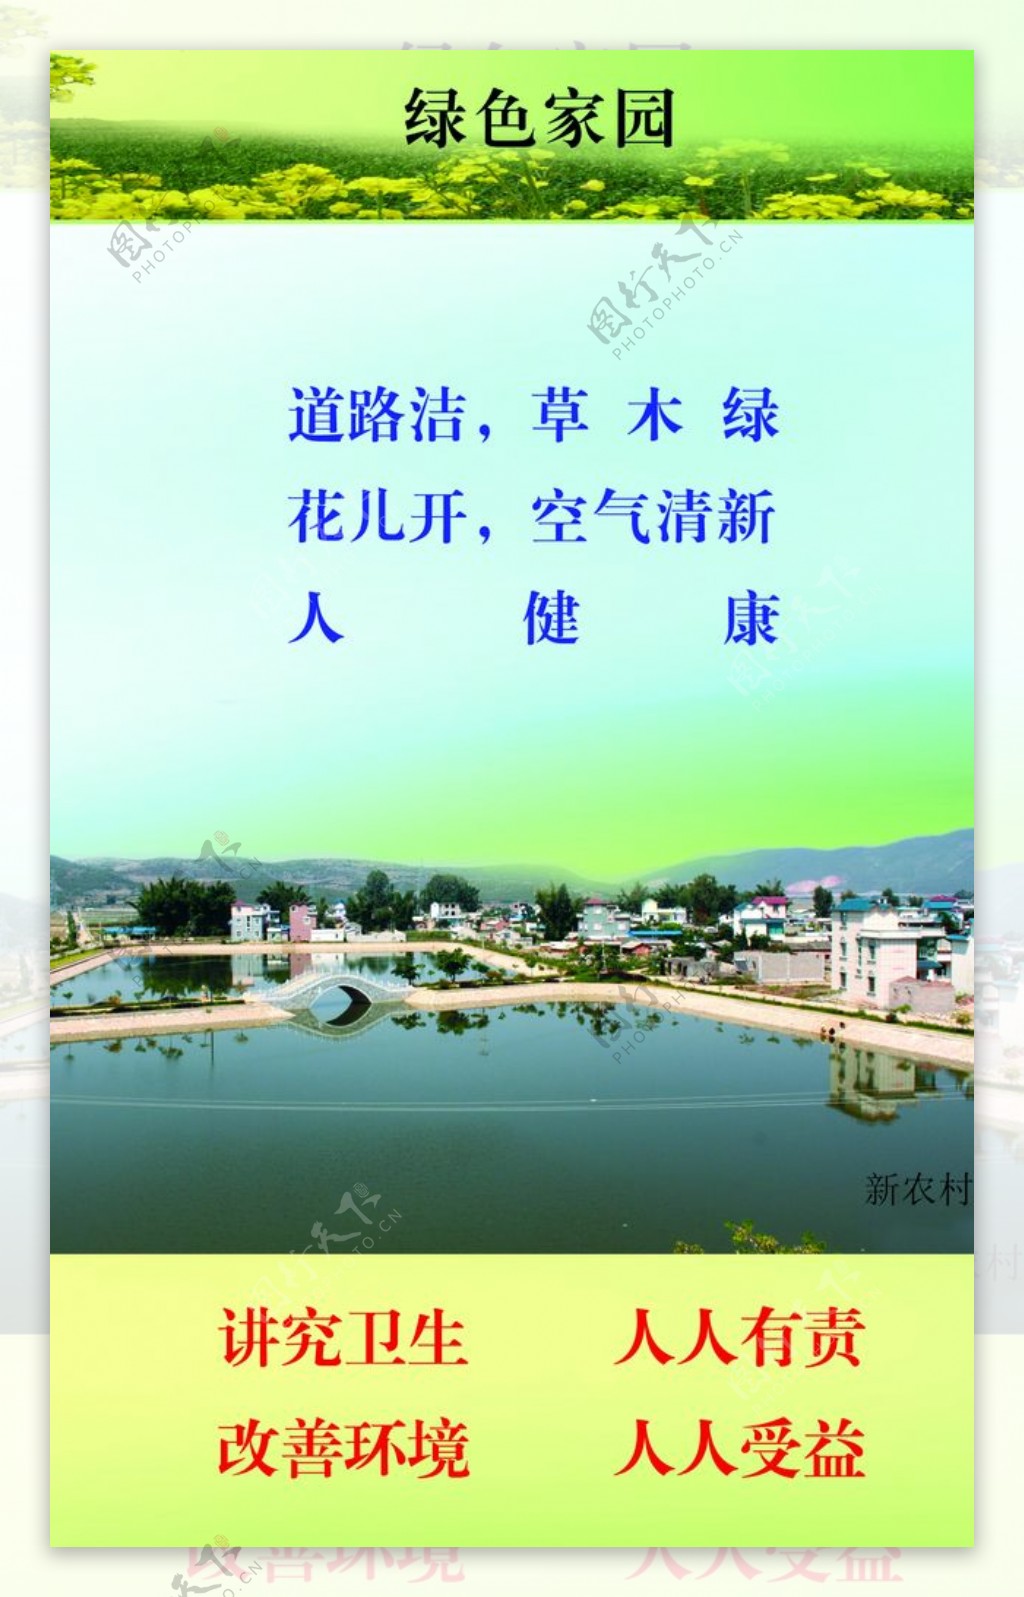 农村环境卫生宣传手册封底图片